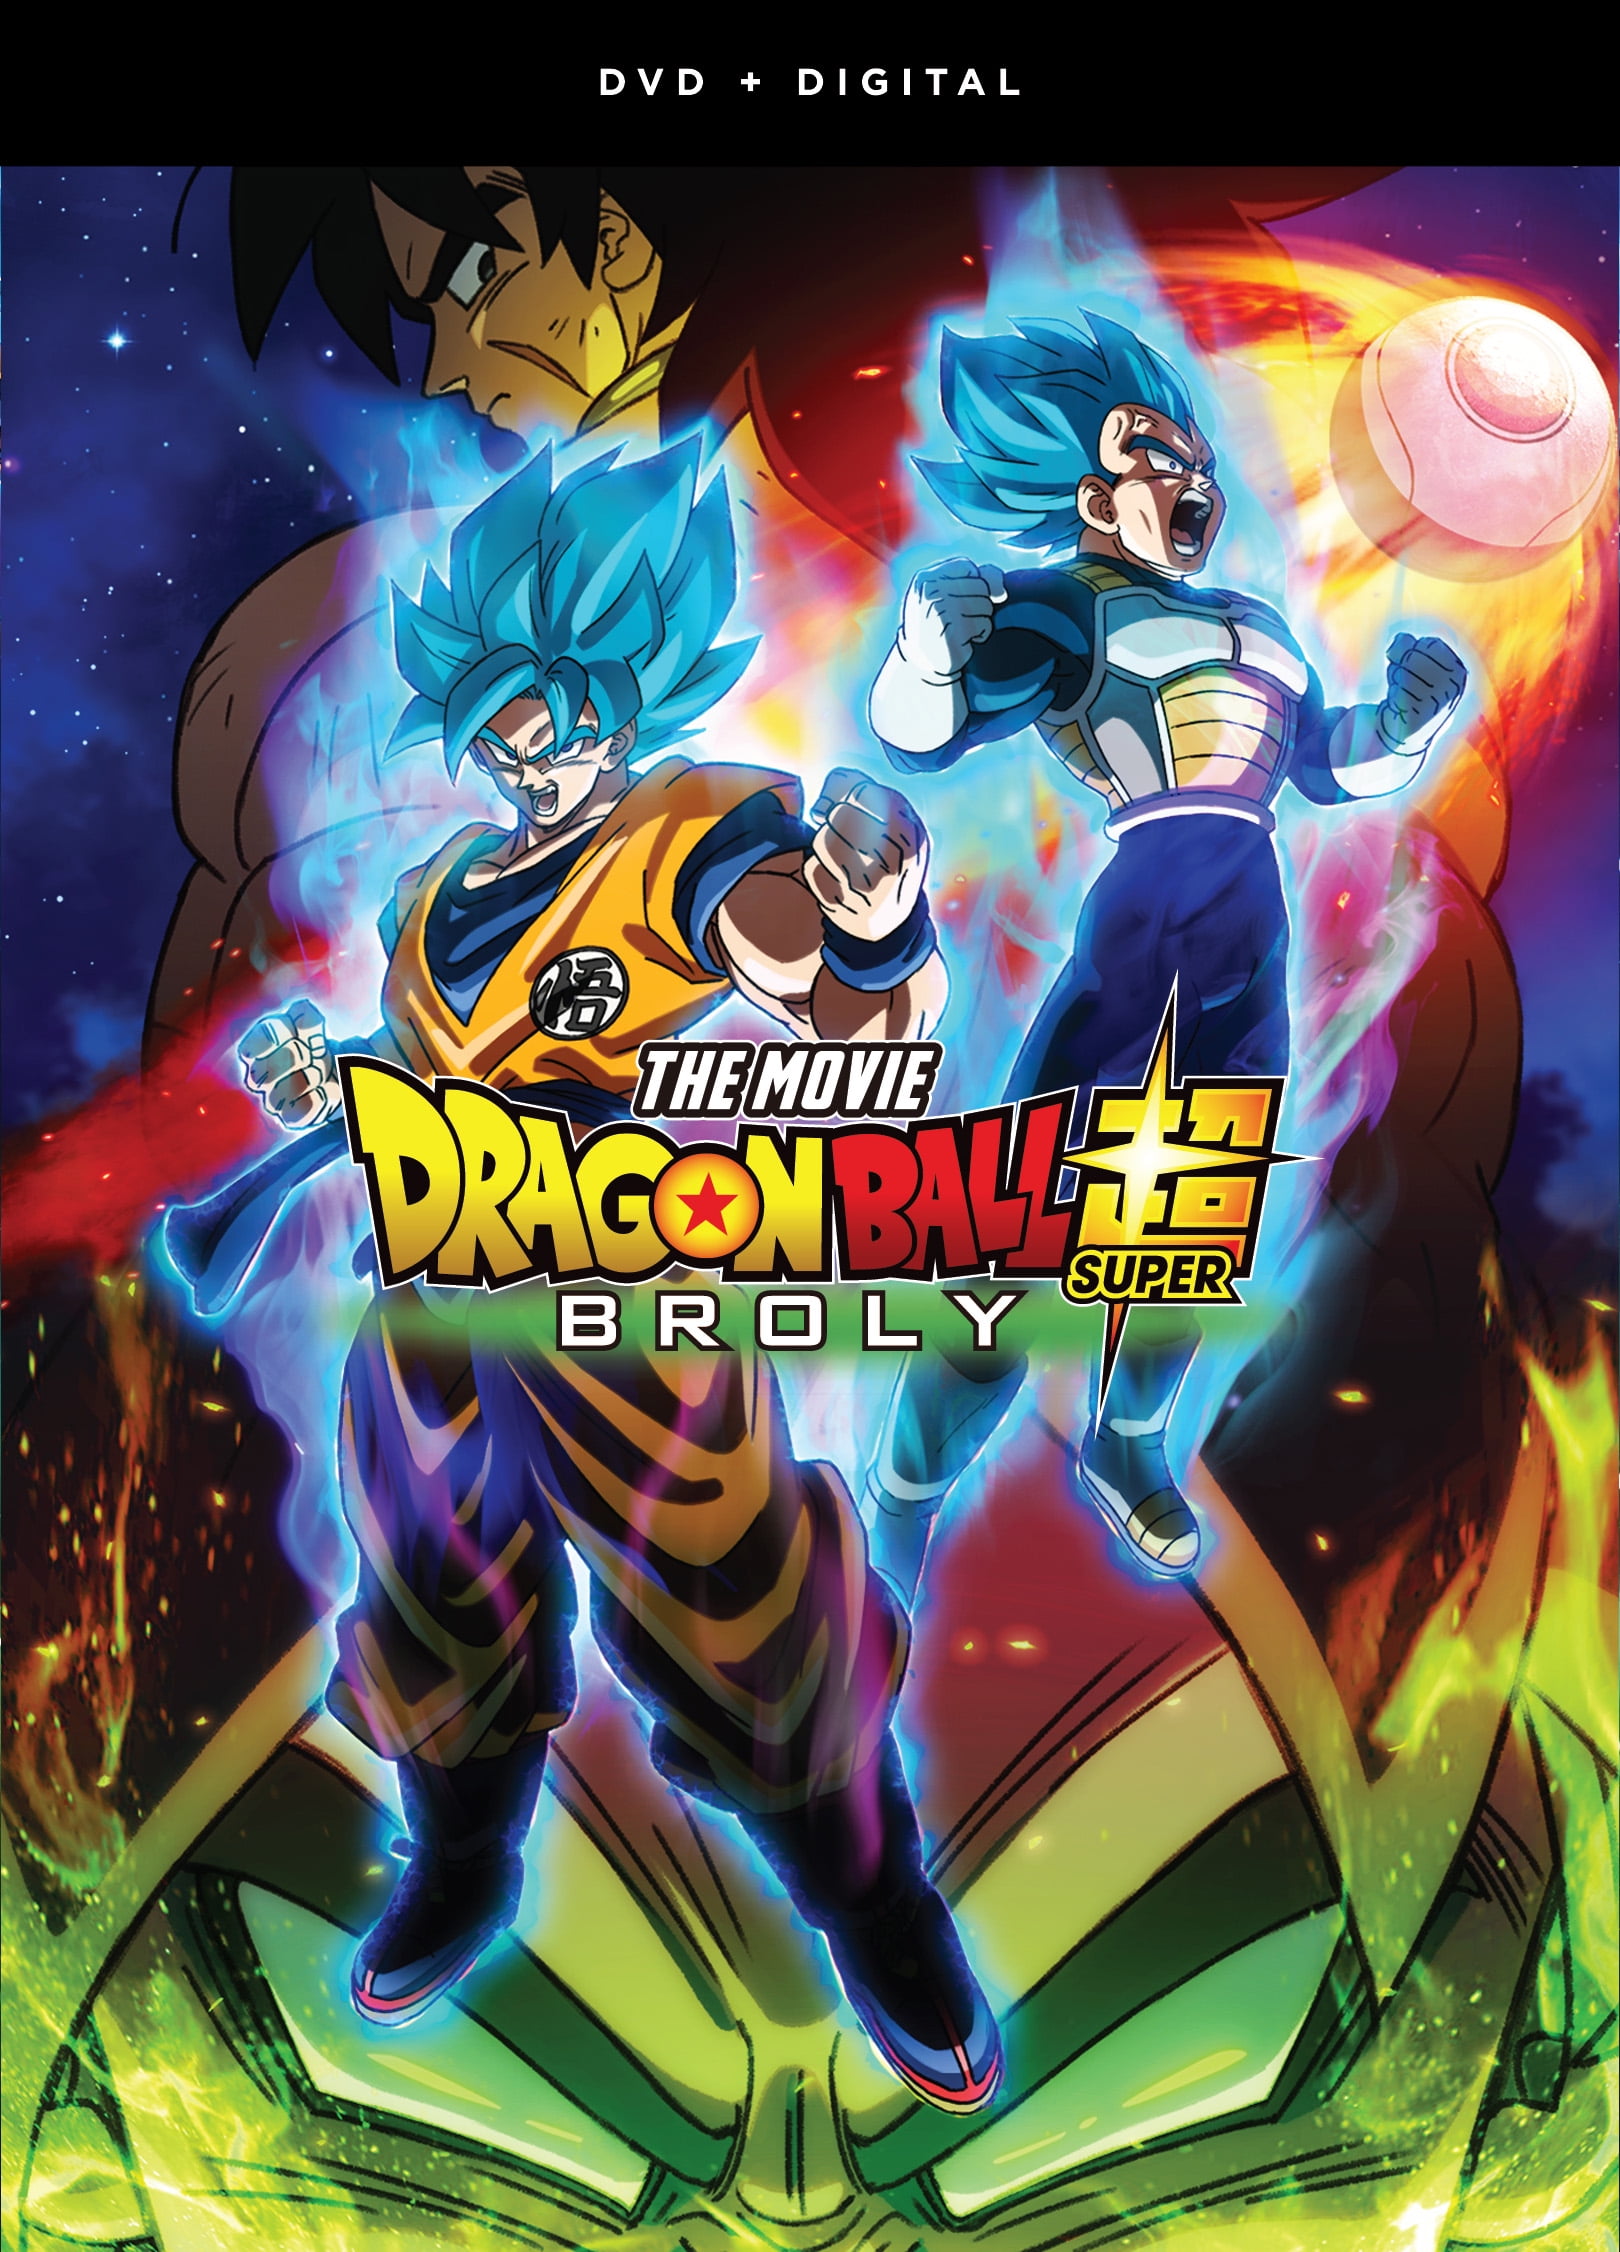 Dragon Ball Super: Broly - The Movie (DVD + Digital Copy) - Walmart.com - Walmart.com